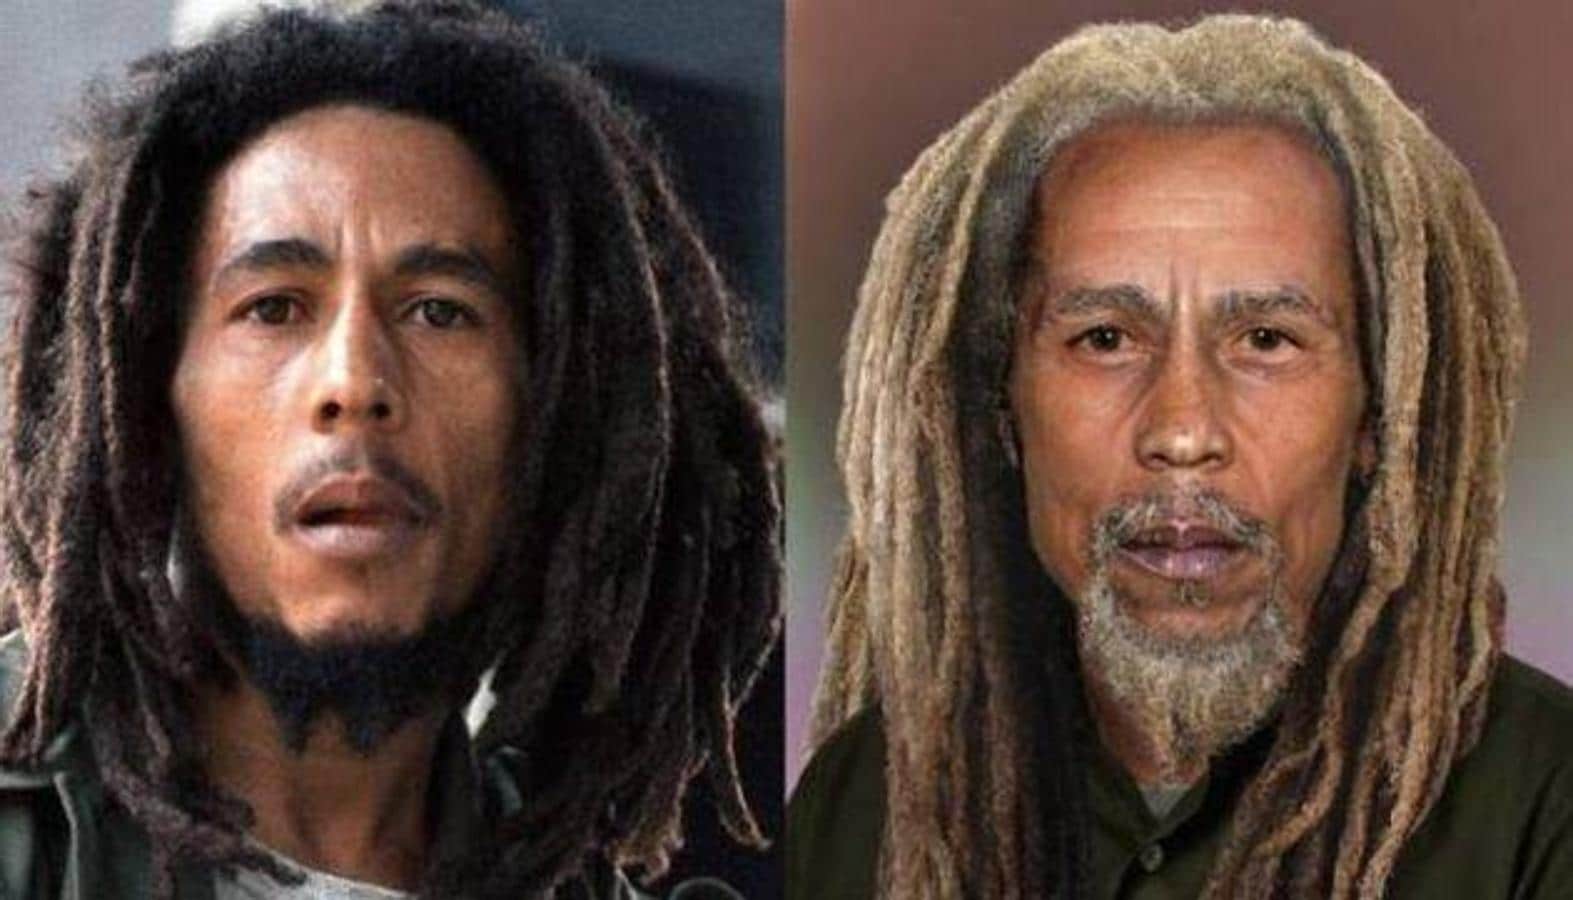 Bob Marley. Cantante jamaicano, principal figura y difusor de la música reggae murió en 1981 a la edad de 36 años después de ocho meses luchando sin éxito contra el cáncer.